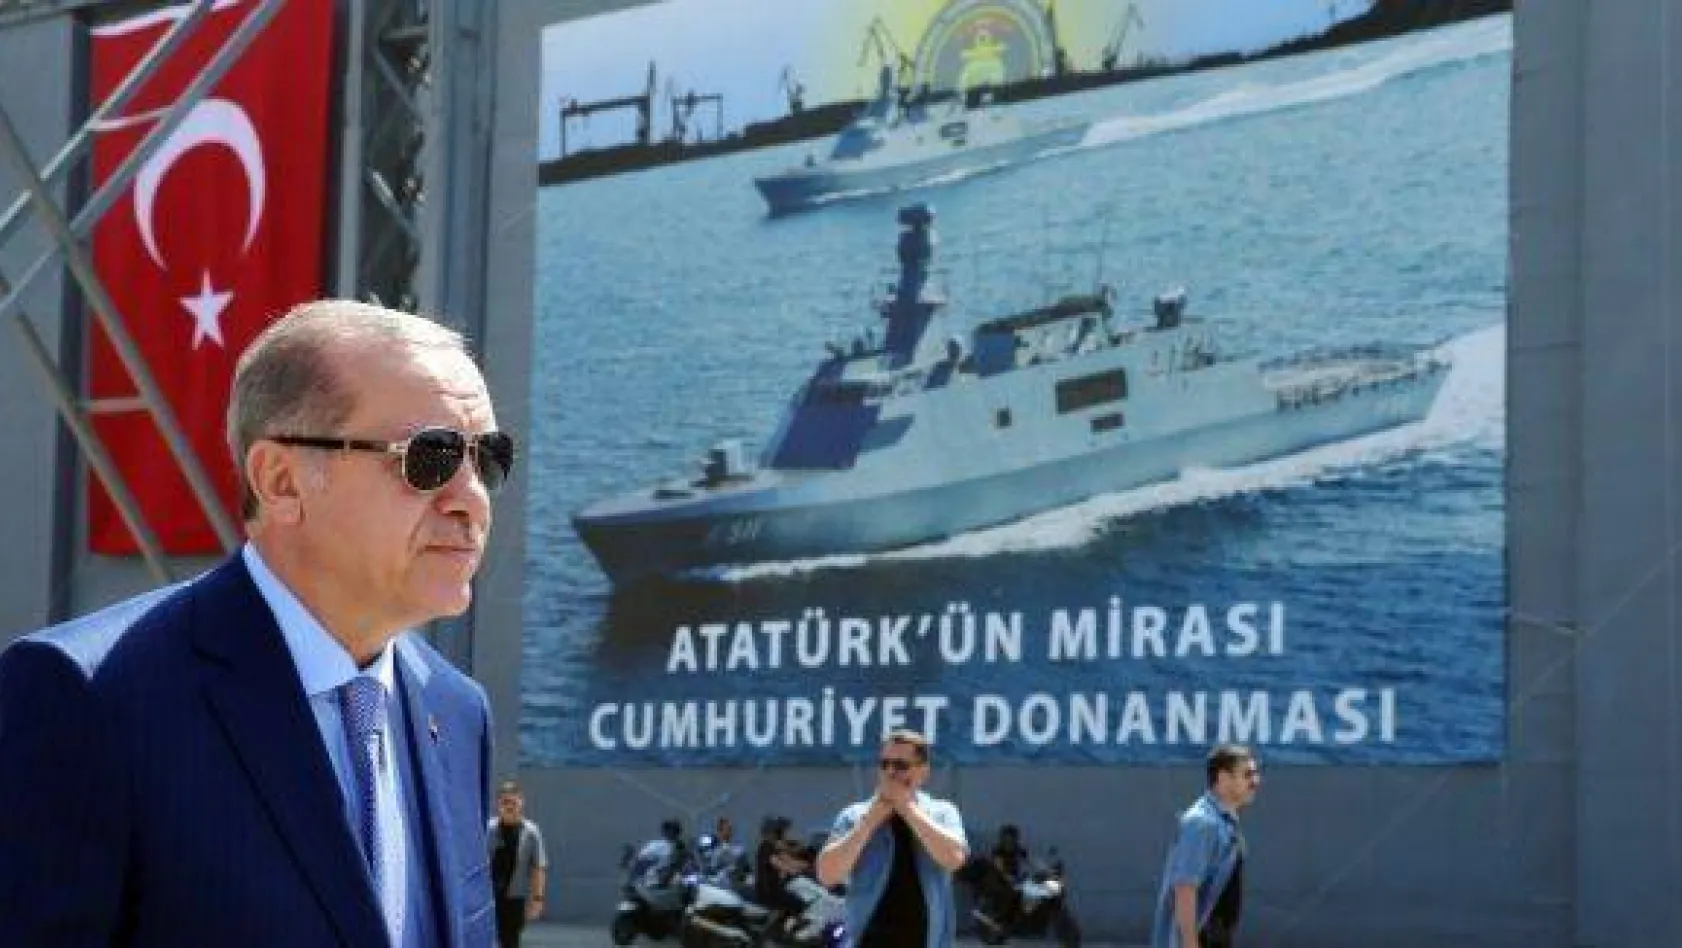 Cumhurbaşkanı Erdoğan: "İnşallah uçak gemimizi de yapacağız"